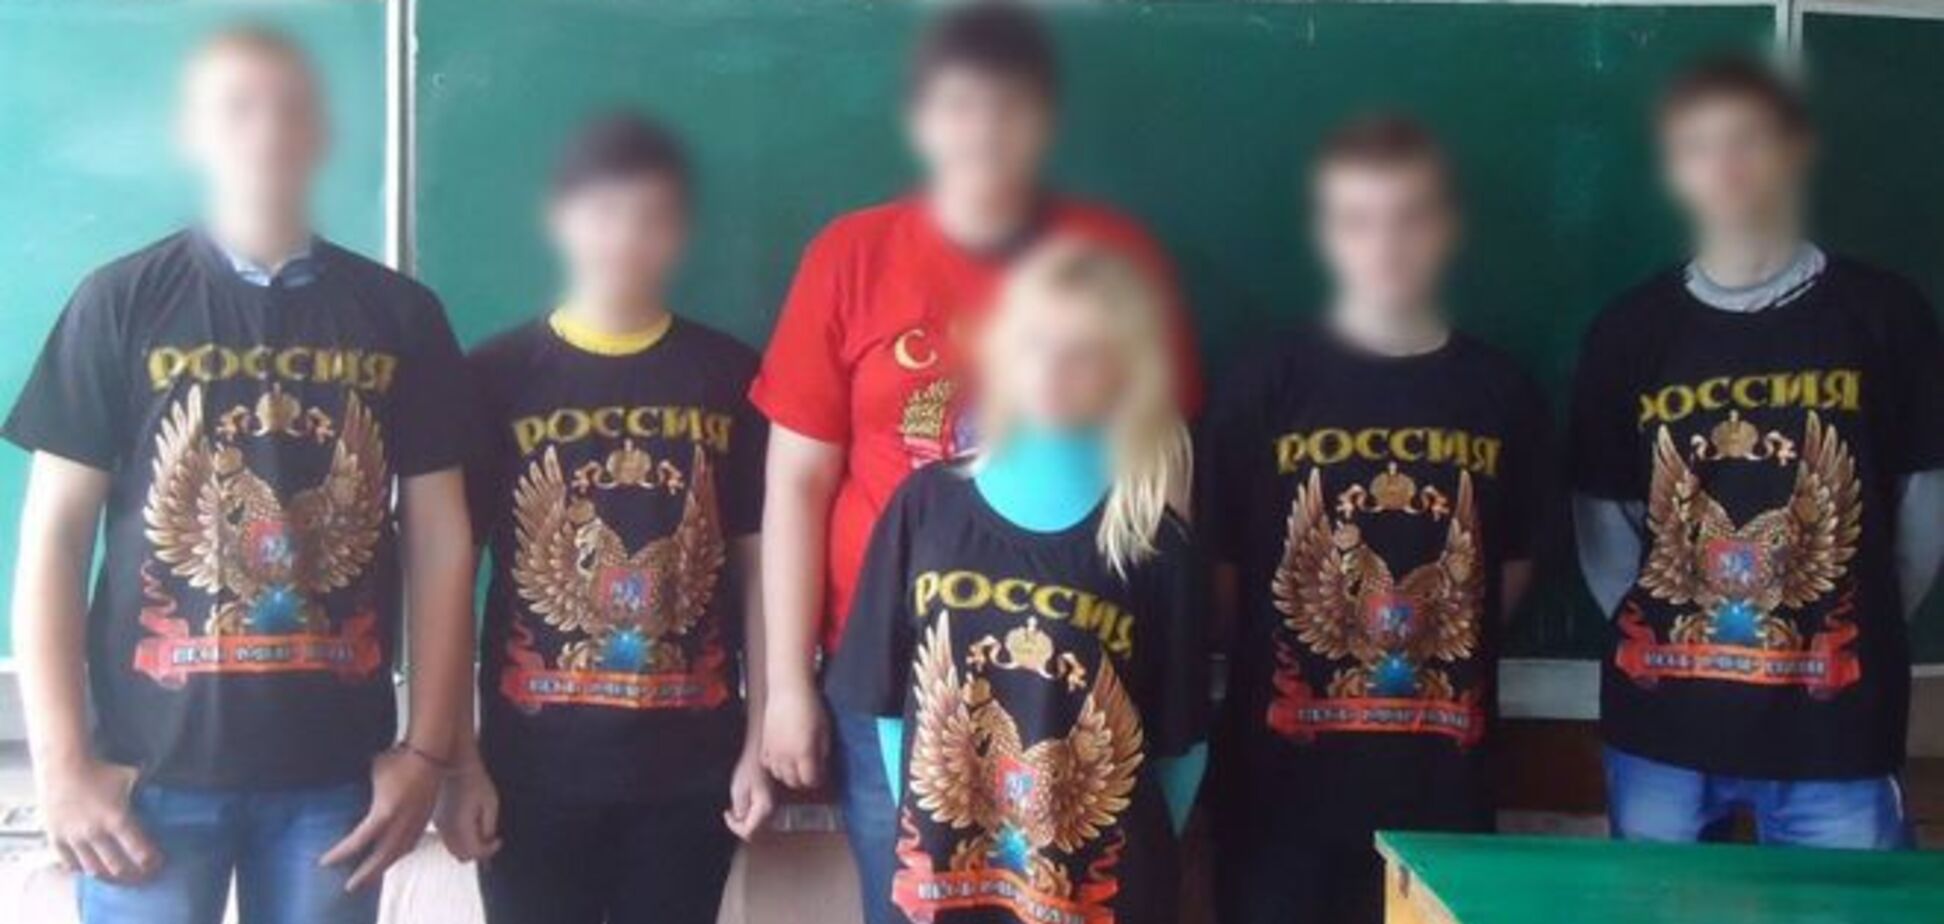 'Весь мир наш': российский 'гумконвой' одел детей в футболки с пропагандой. Фотофакт